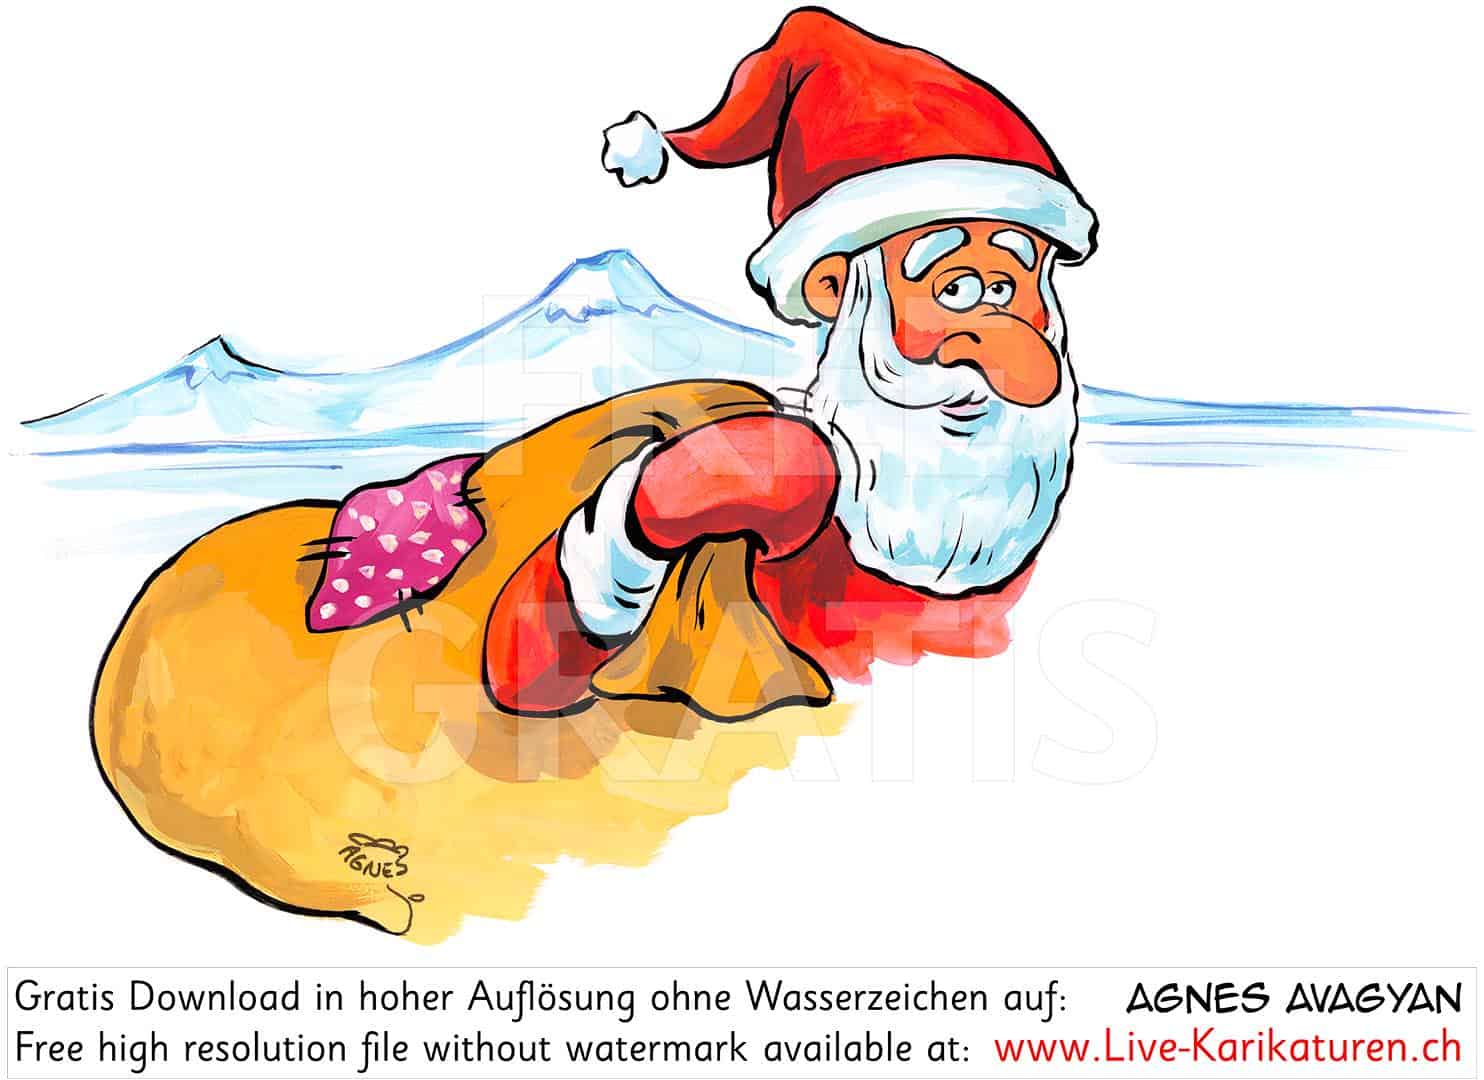 weihnachtsmann ararat sack schneeberge armenien — agnes